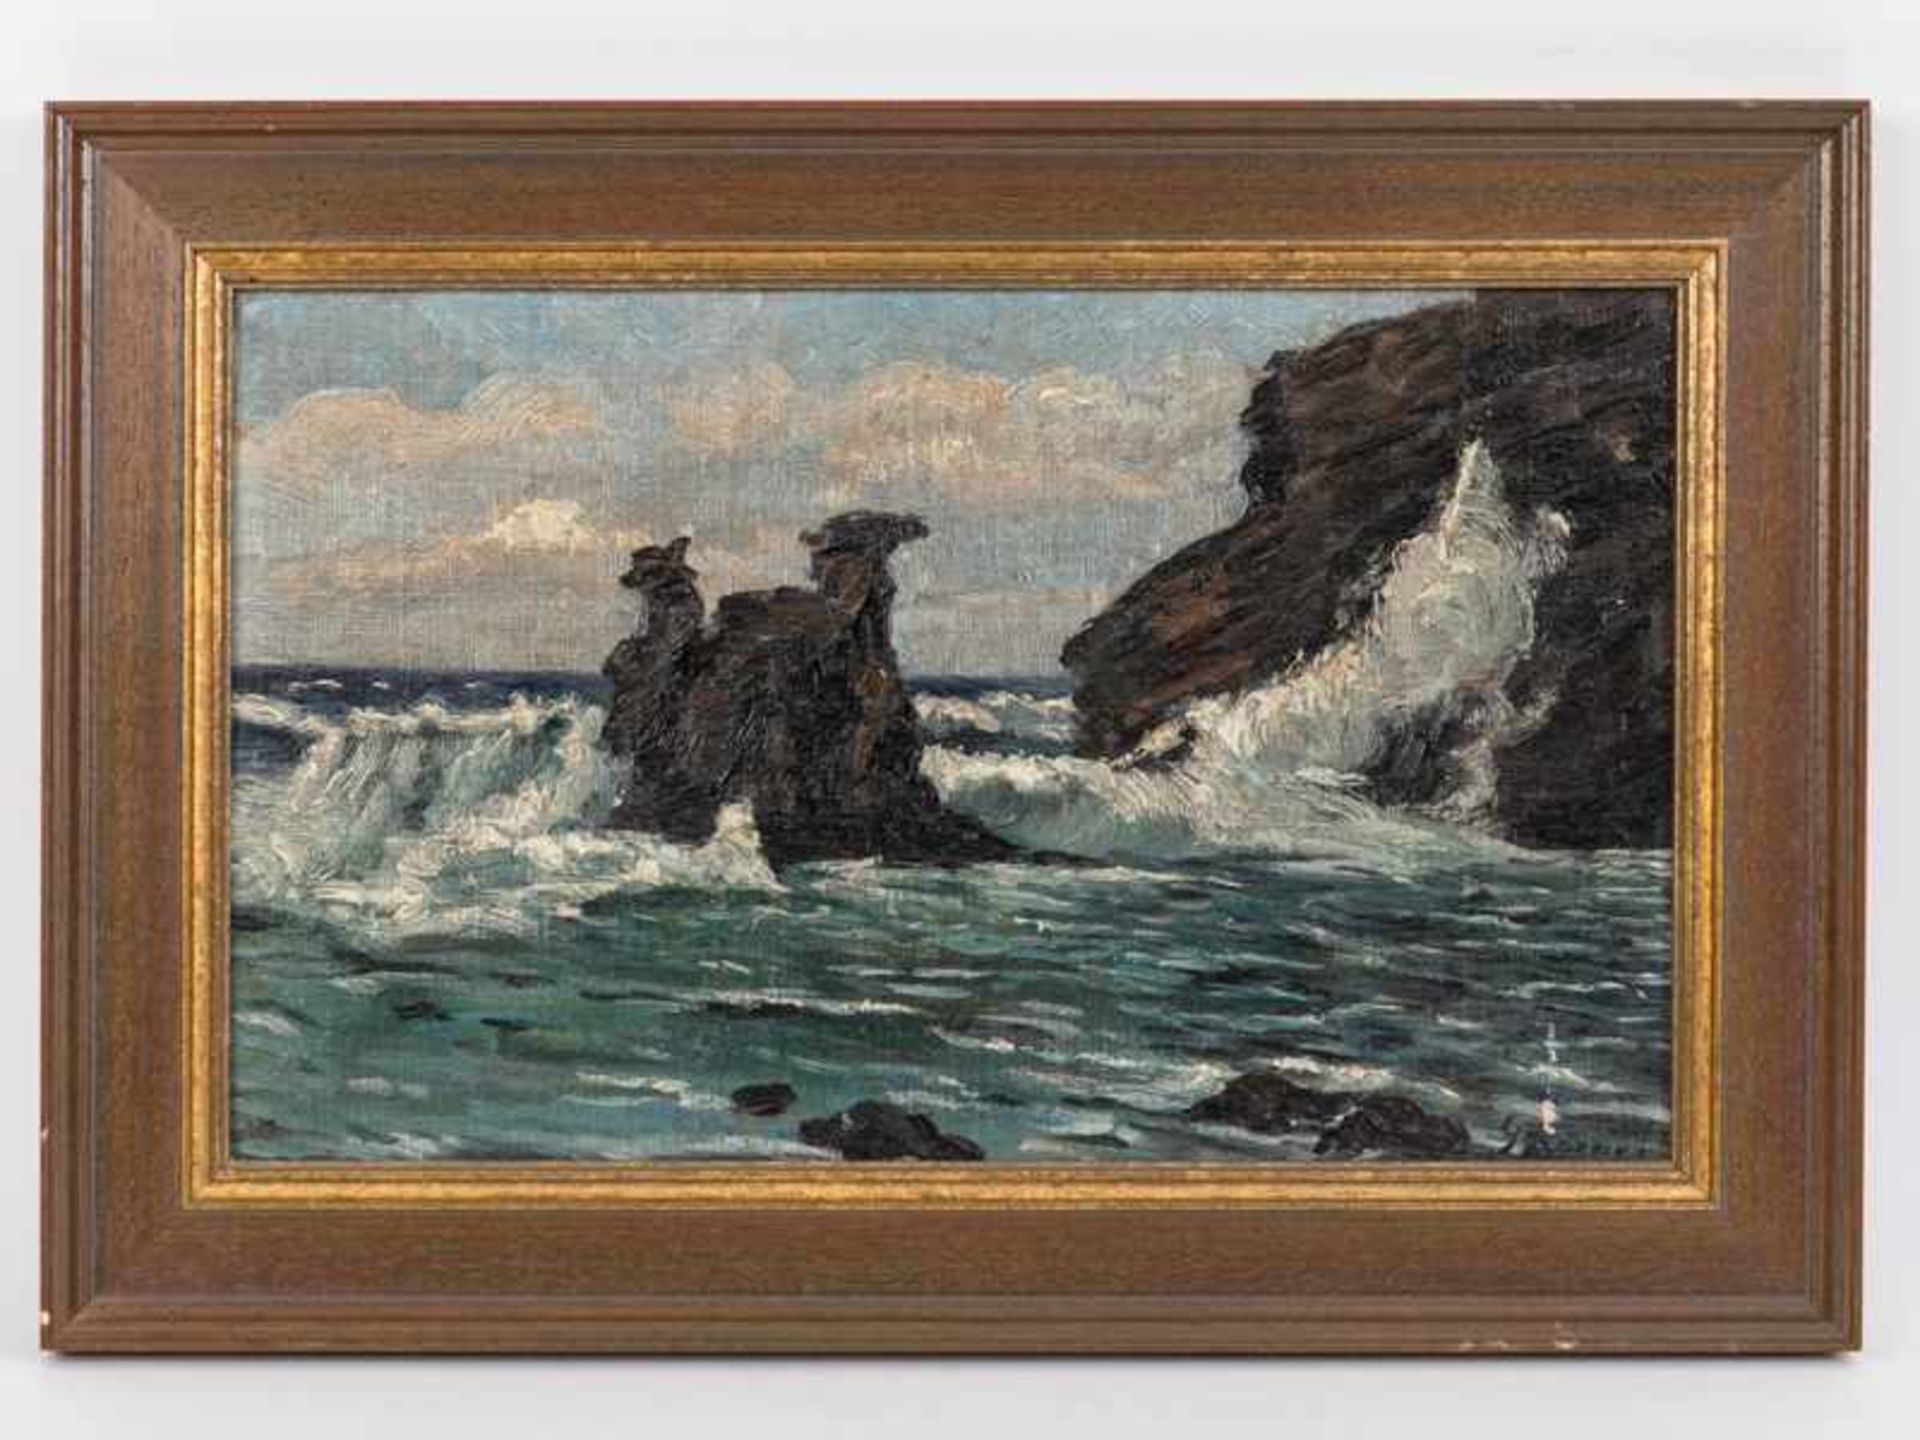 Körner, Gertrud (1866 - 1924). Öl auf Leinwand; "Meeresbrandung an felsiger Küste", studienartige